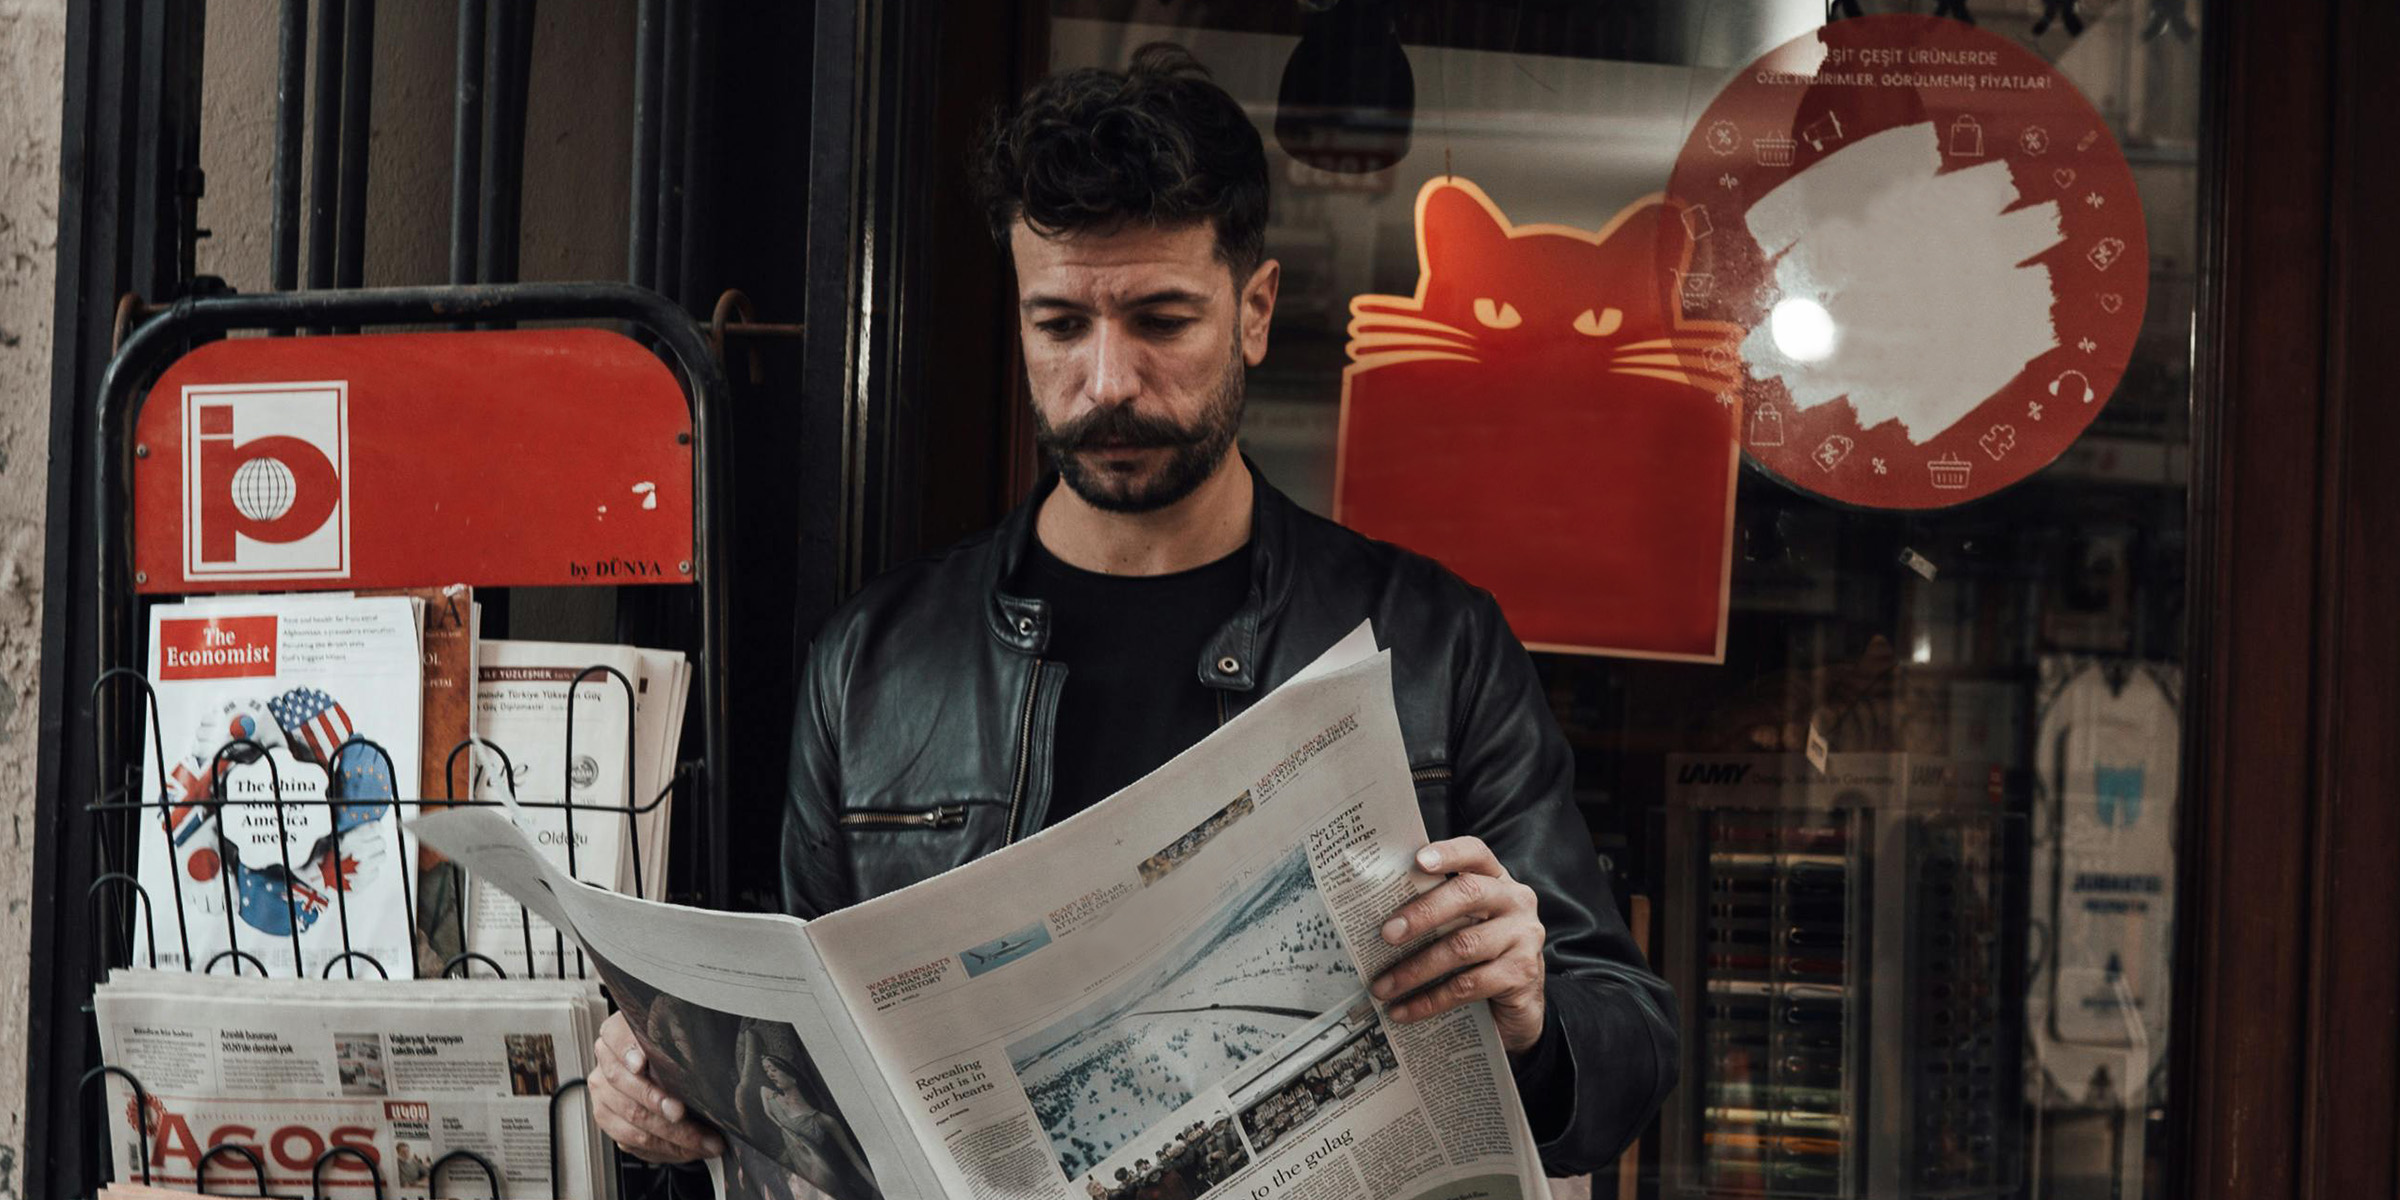 Ein Tourist liest eine Zeitung in einem Buchladen | Quelle: Pexels